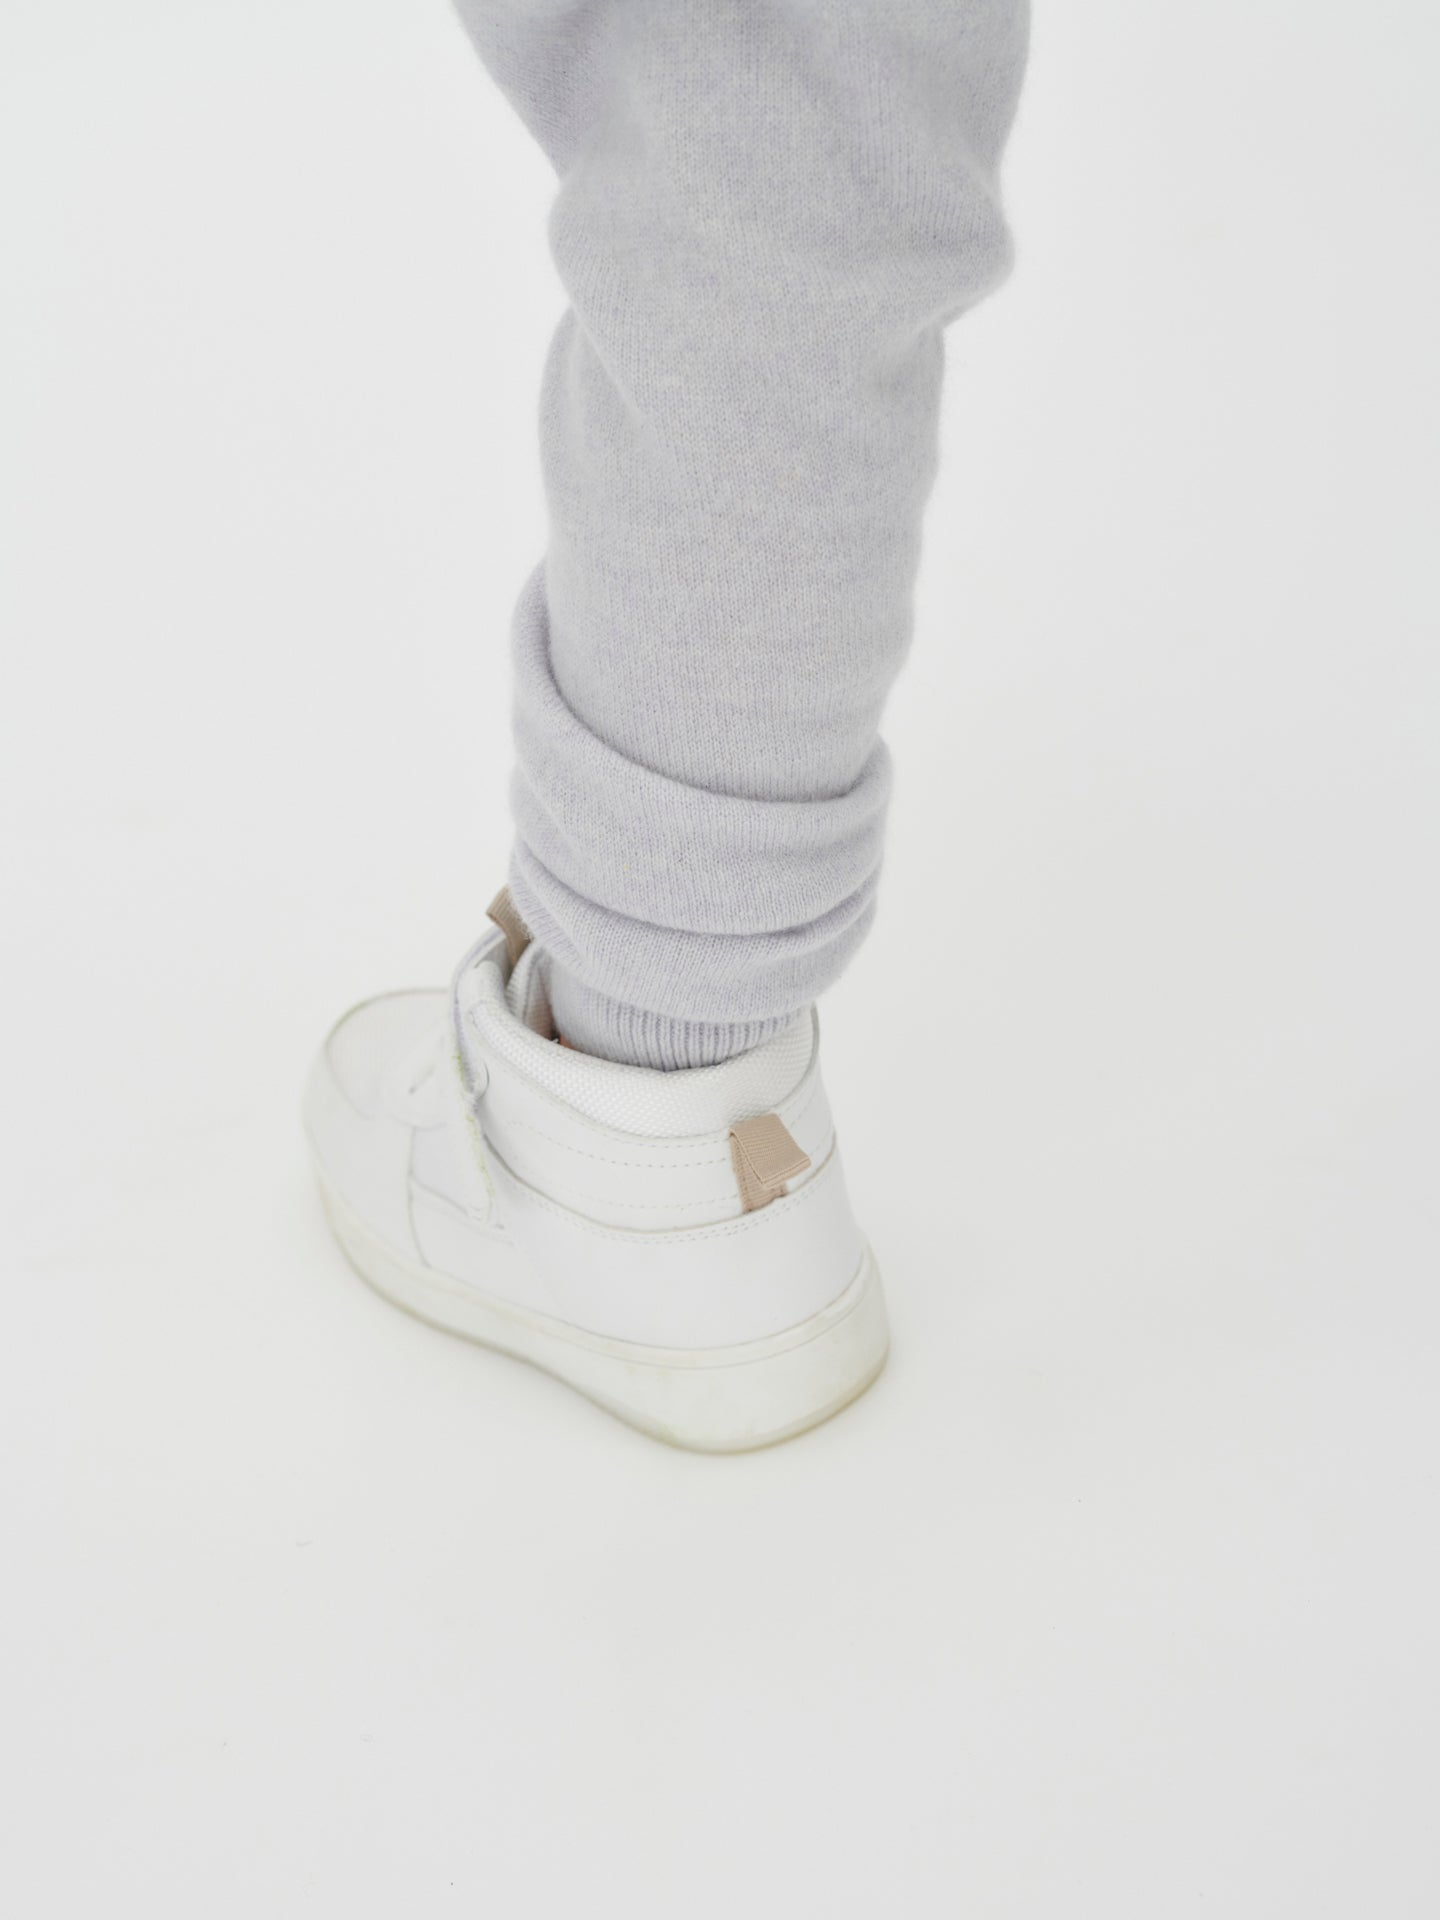 Pantalon Cachemire pour enfants glace de l'arctique - Gobi Cashmere